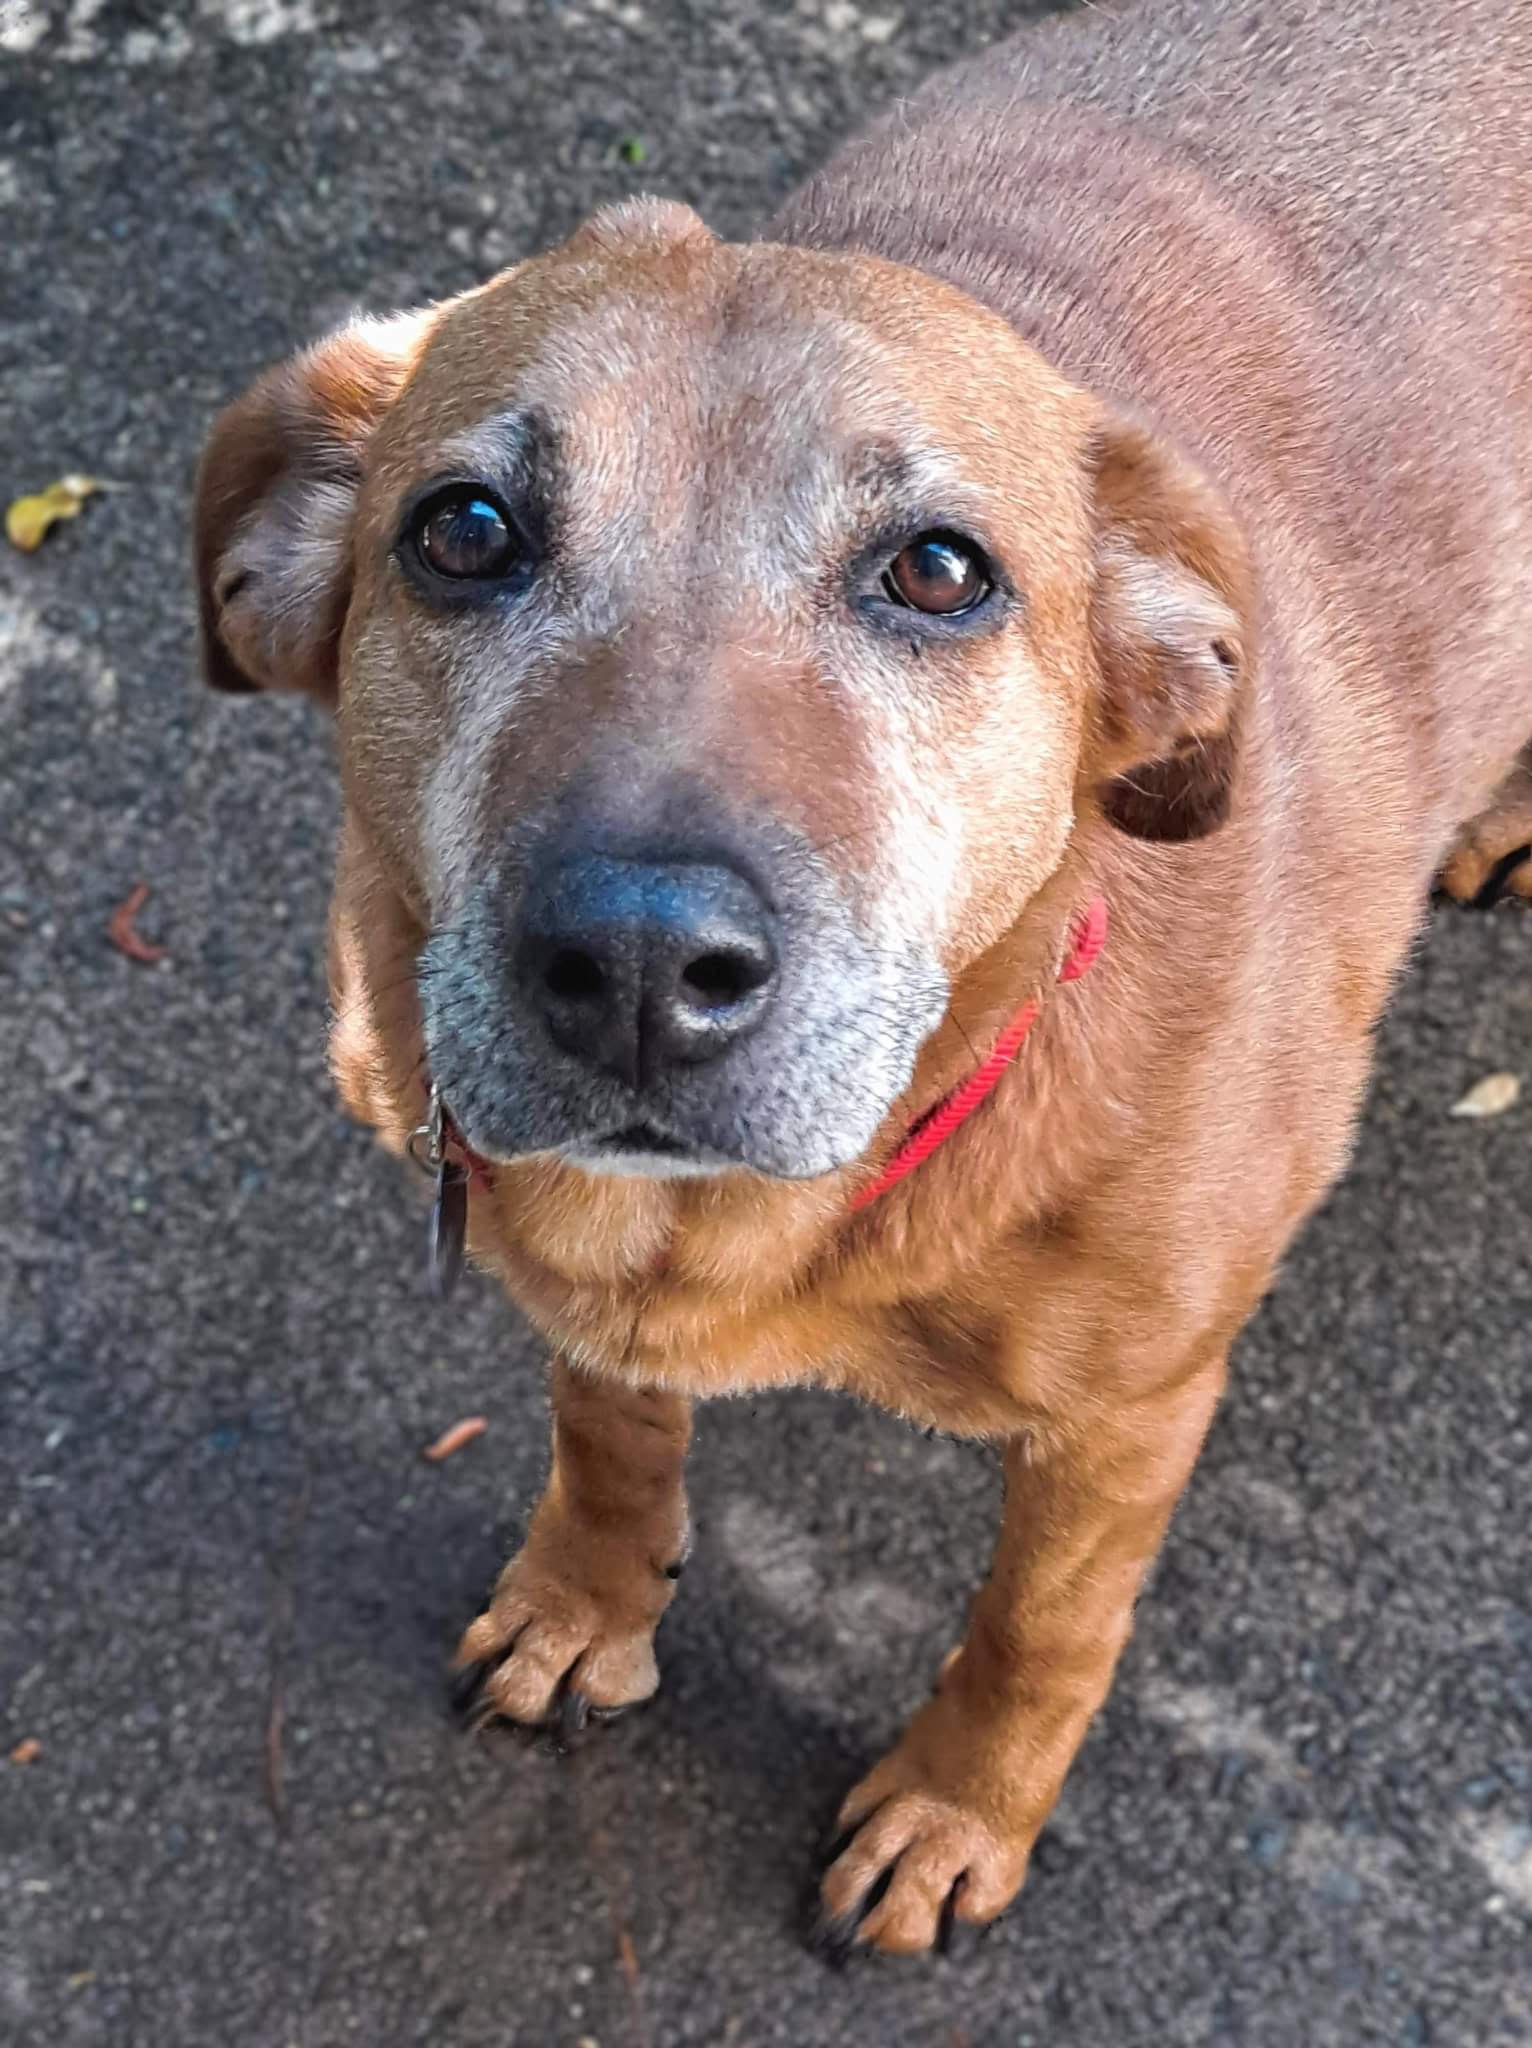 adoptable Dog in Roswell, GA named Rosetta